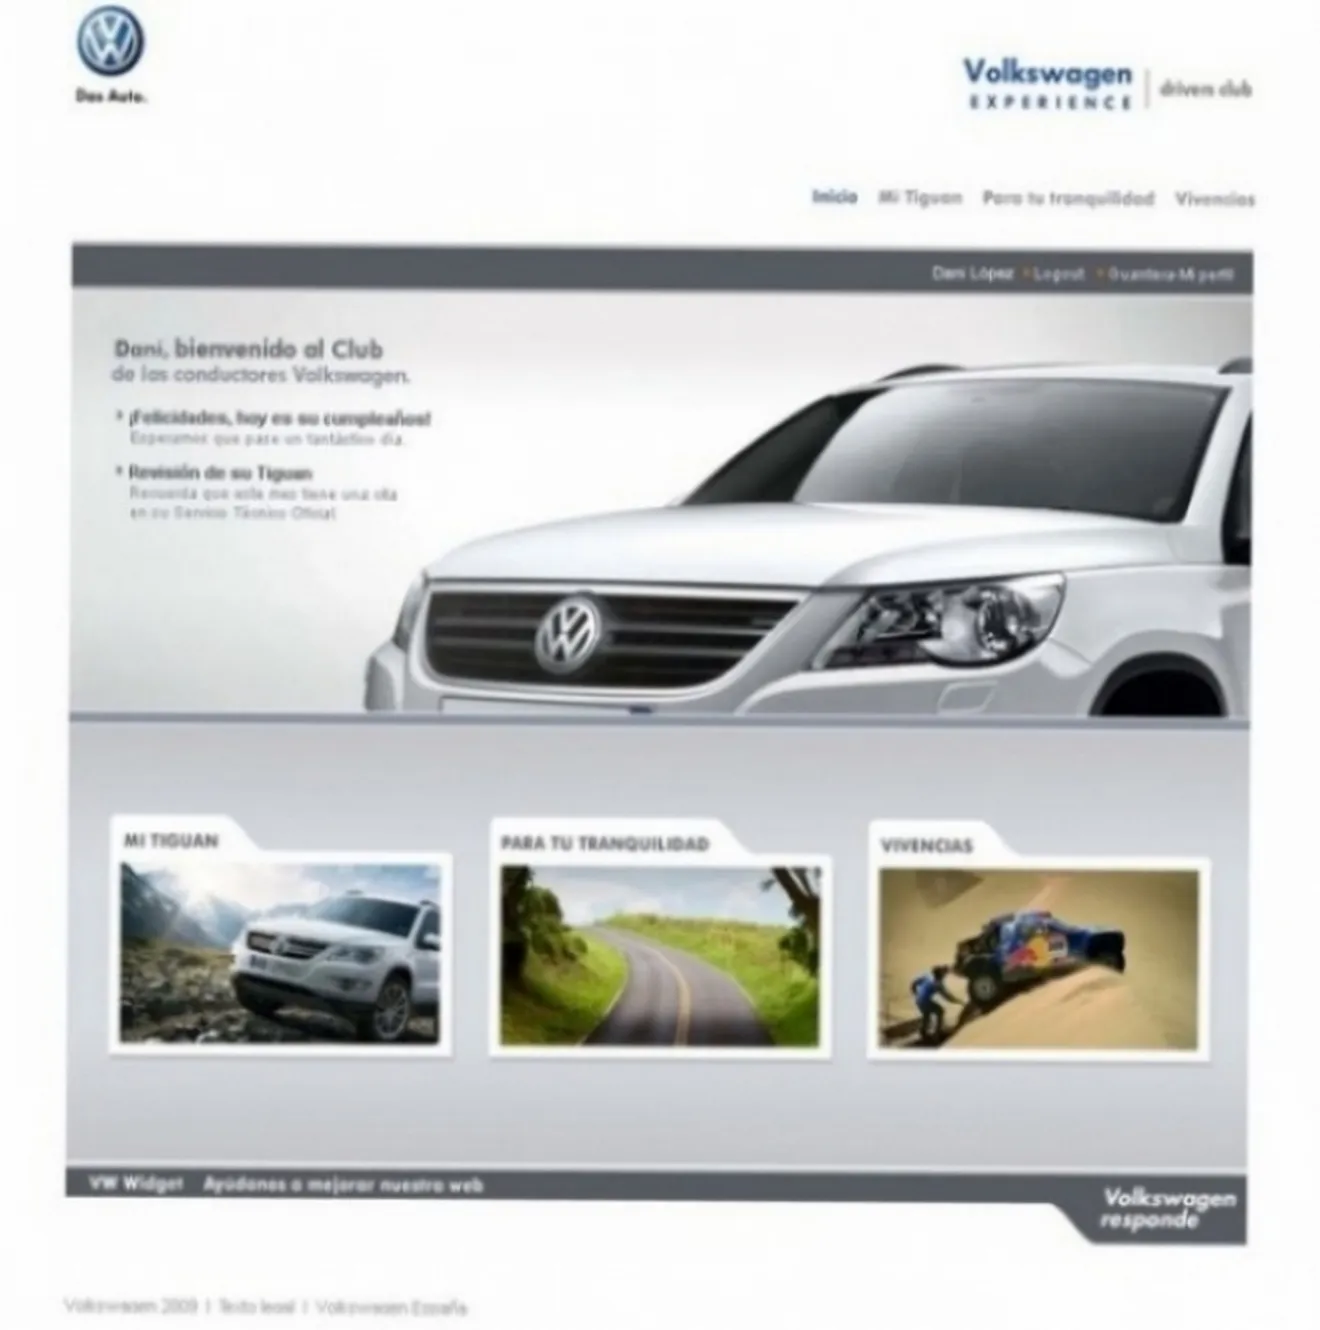 Volkswagen crea el portal VW Experience